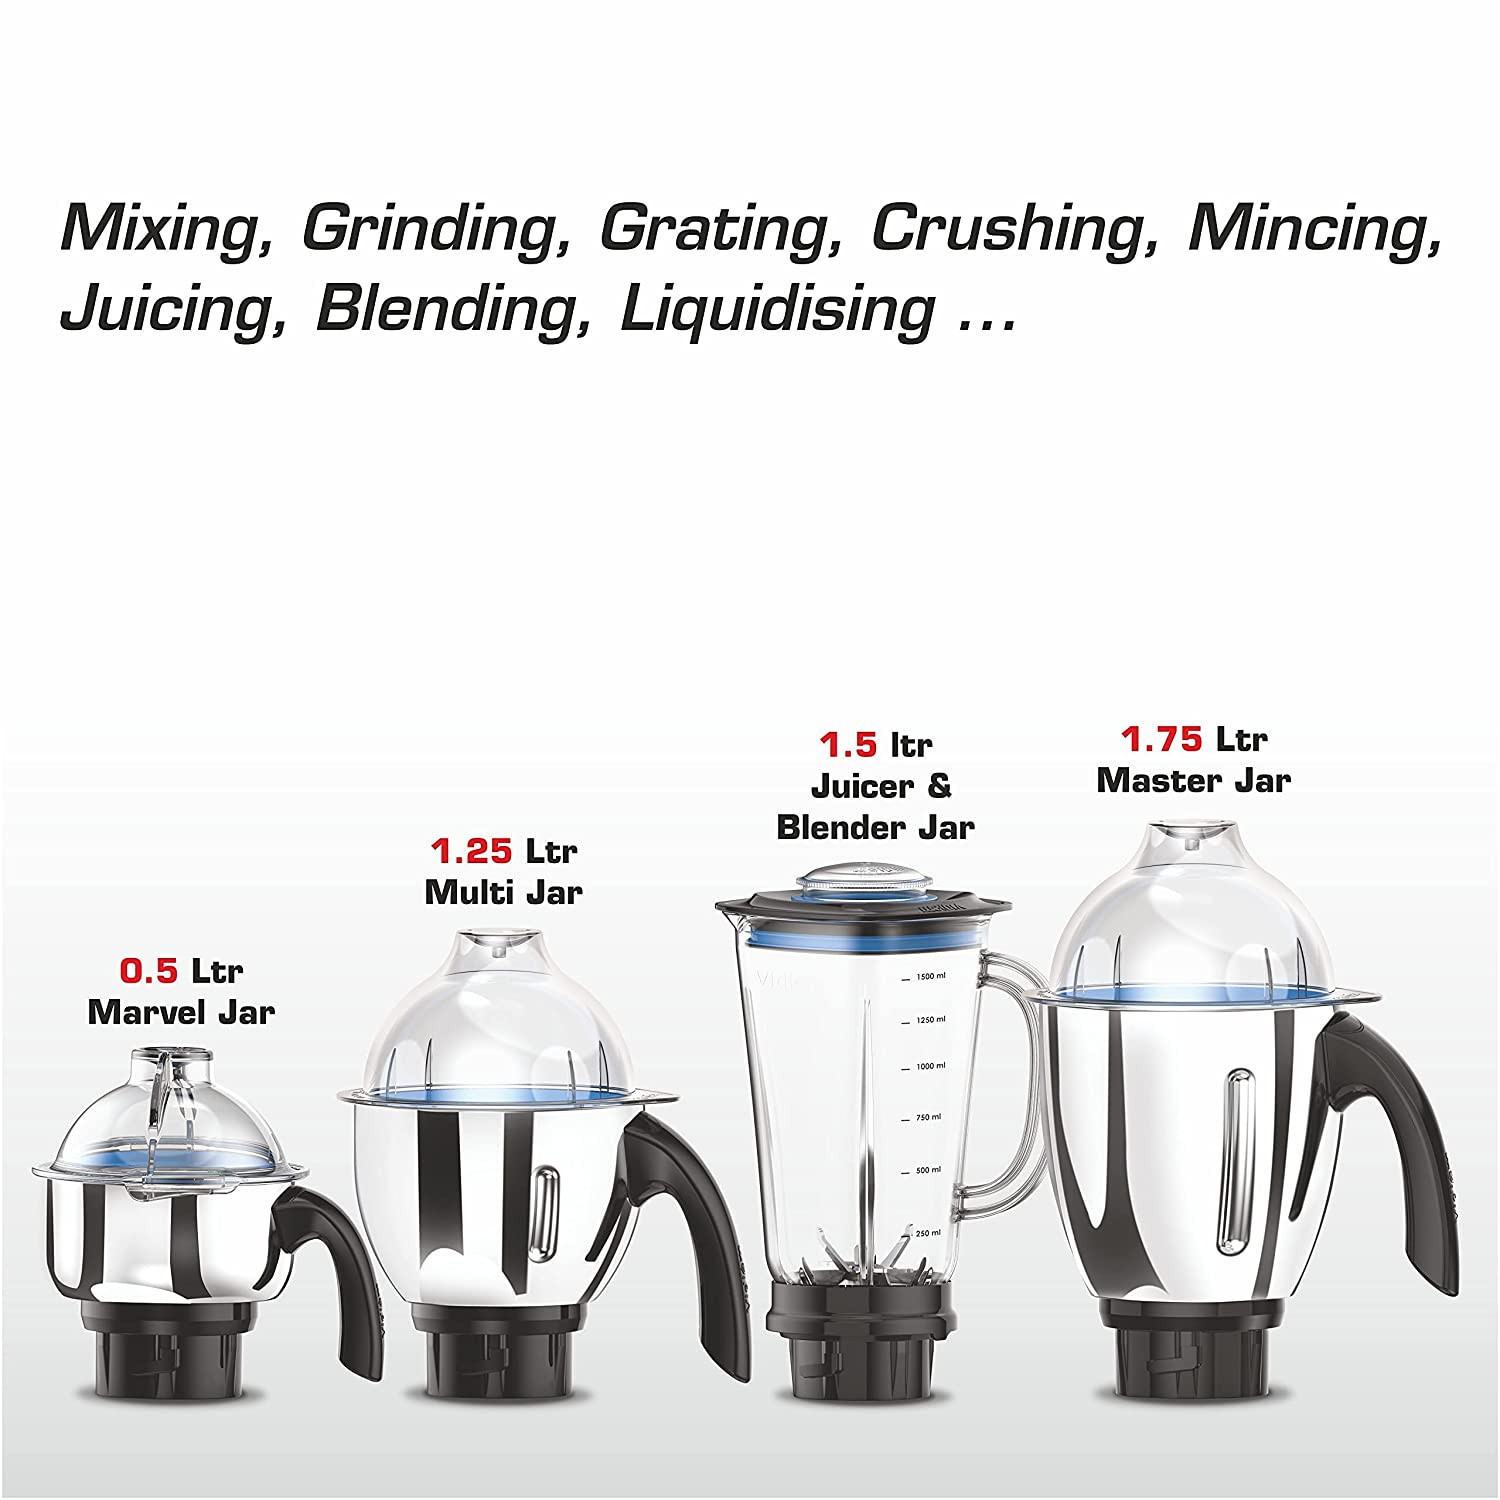 vidiem-tusker-indian-mixer-grinder-blender-food-processor-750w-110v-5-ss-jars-adjustable-vegetable-cutter-dicing-feature-almond-milk-juicer-spice-coffee-grinder-for-usa-canada